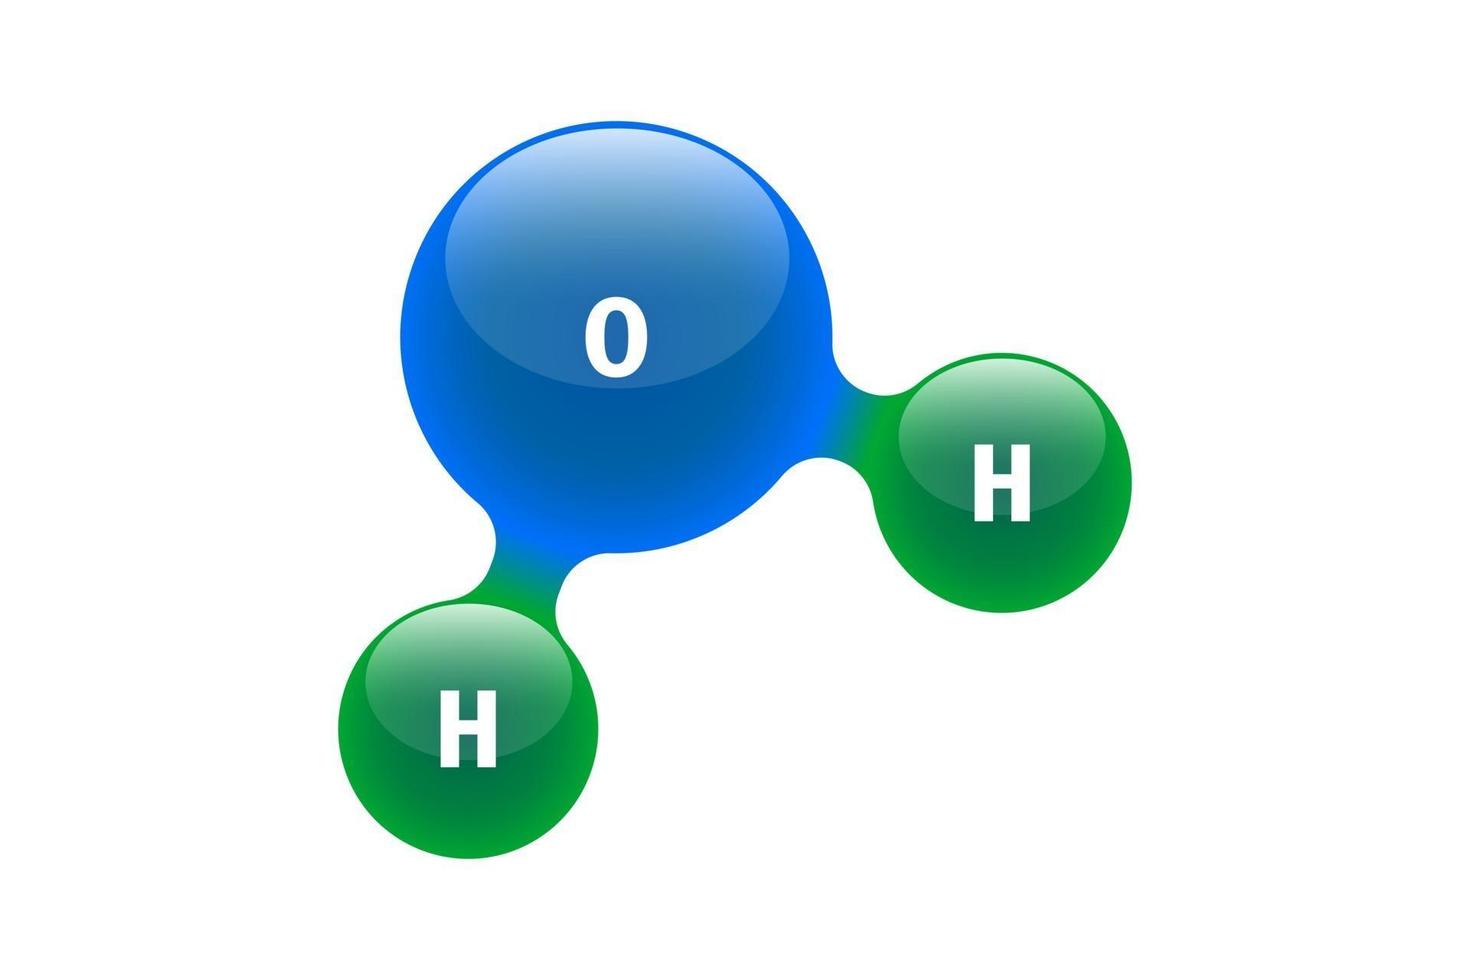 modelo de química de la molécula de agua h2o elementos científicos. partículas integradas de hidrógeno y oxígeno compuesto inorgánico natural. Ilustración de vector de estructura molecular 3d aislado sobre fondo blanco